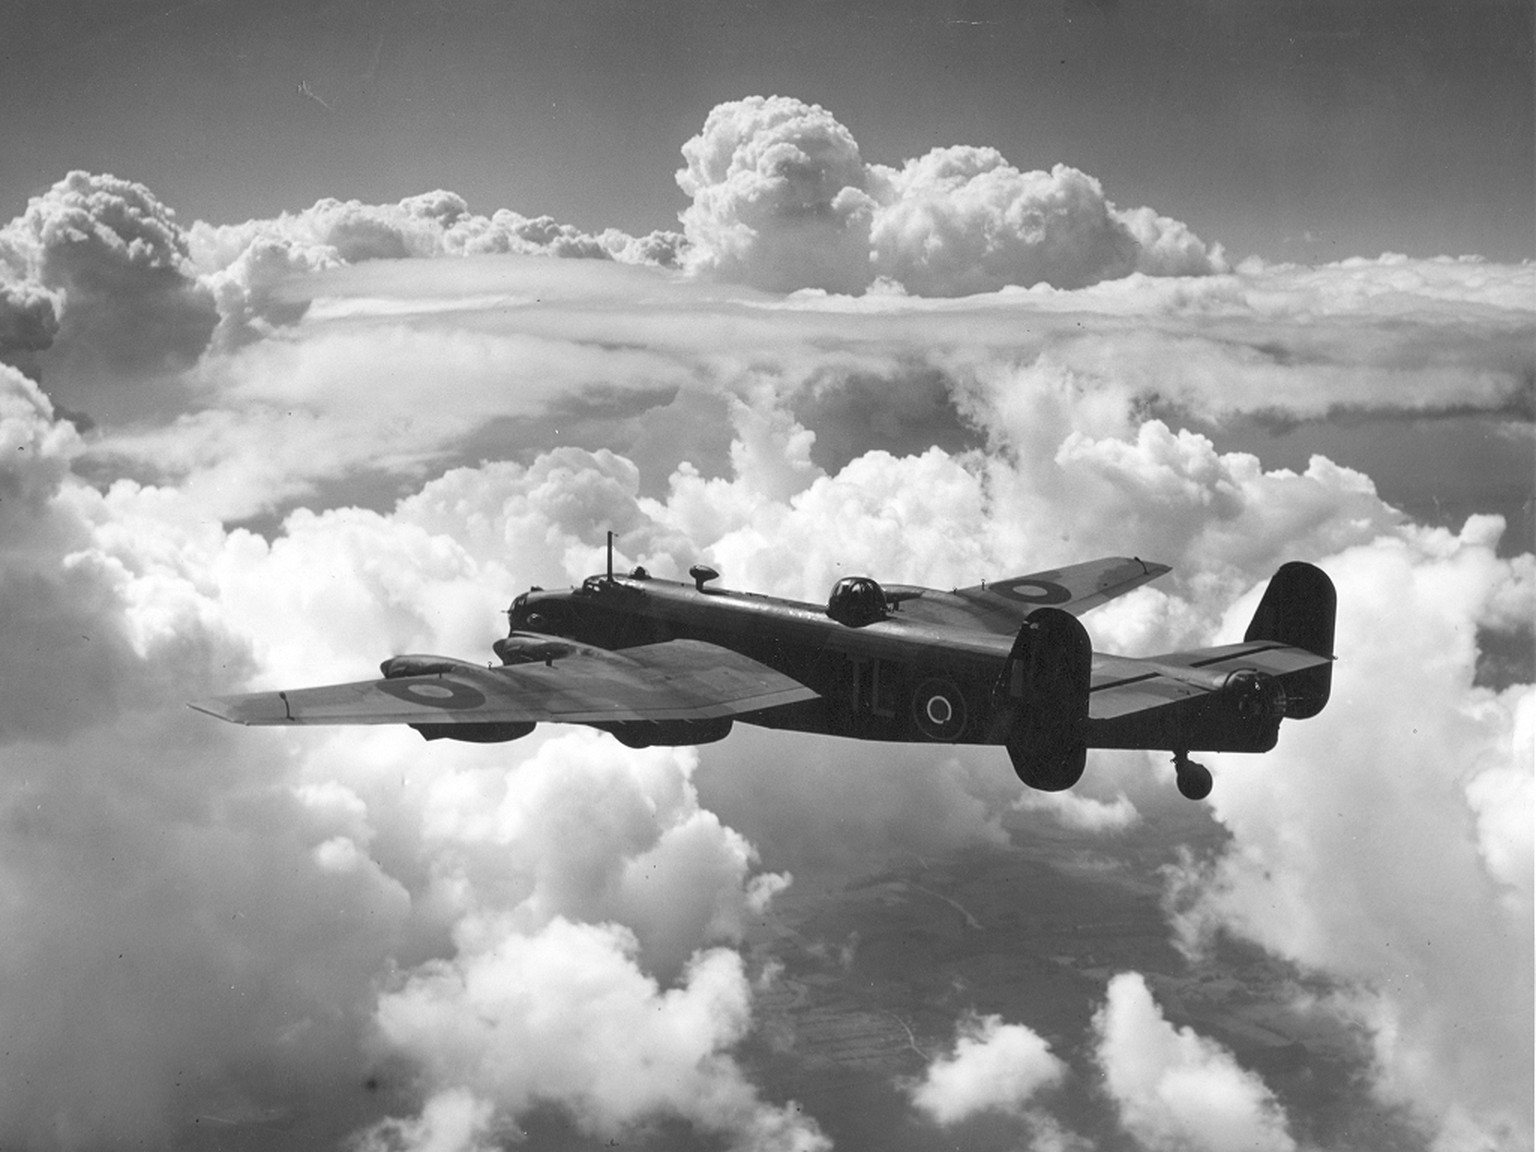 handley page halifax bomber zweiter weltkrieg royal air force 1939-1945 history geschichte